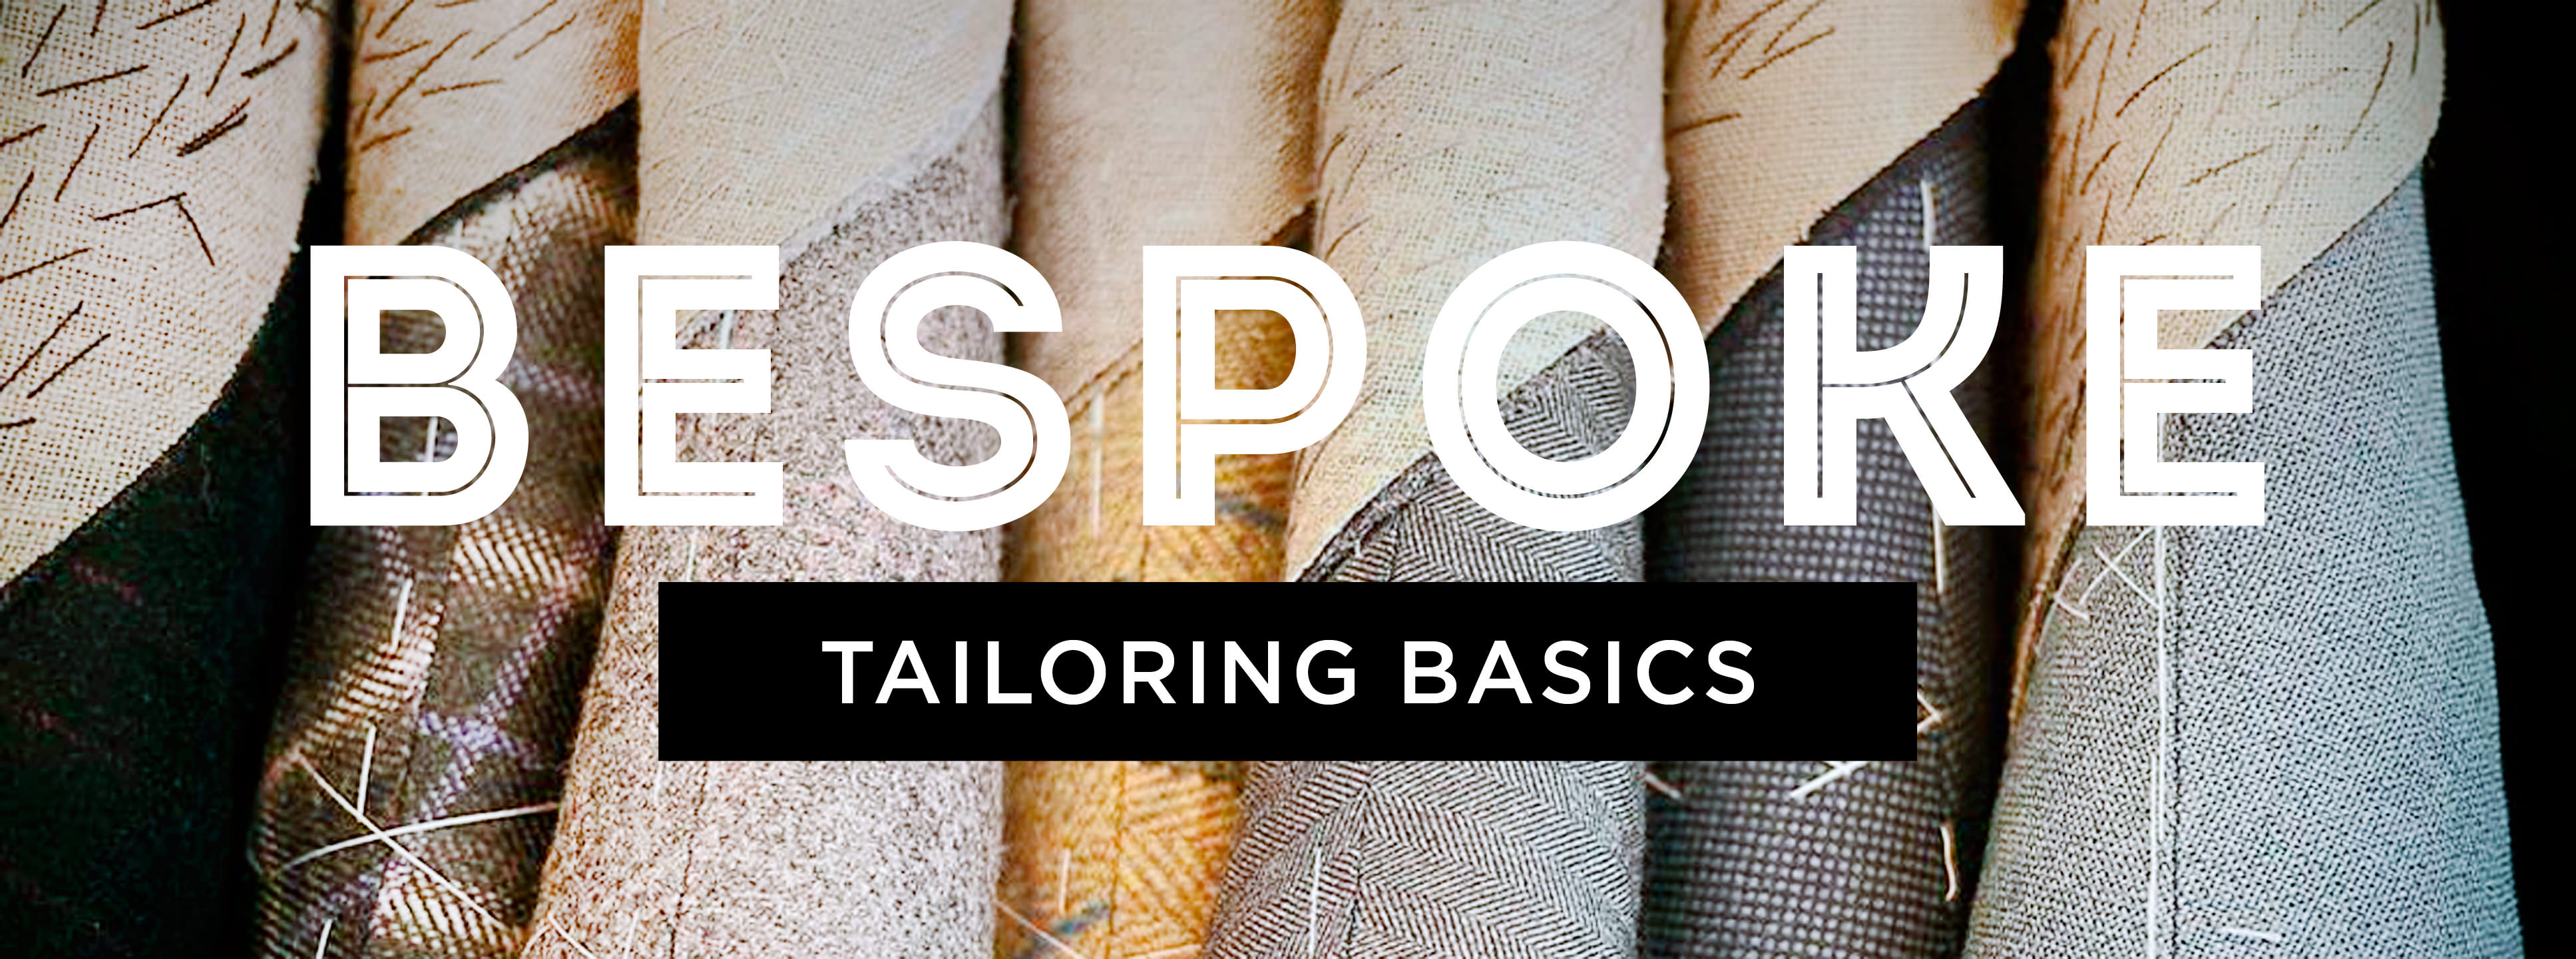 bespoke tailoring basics